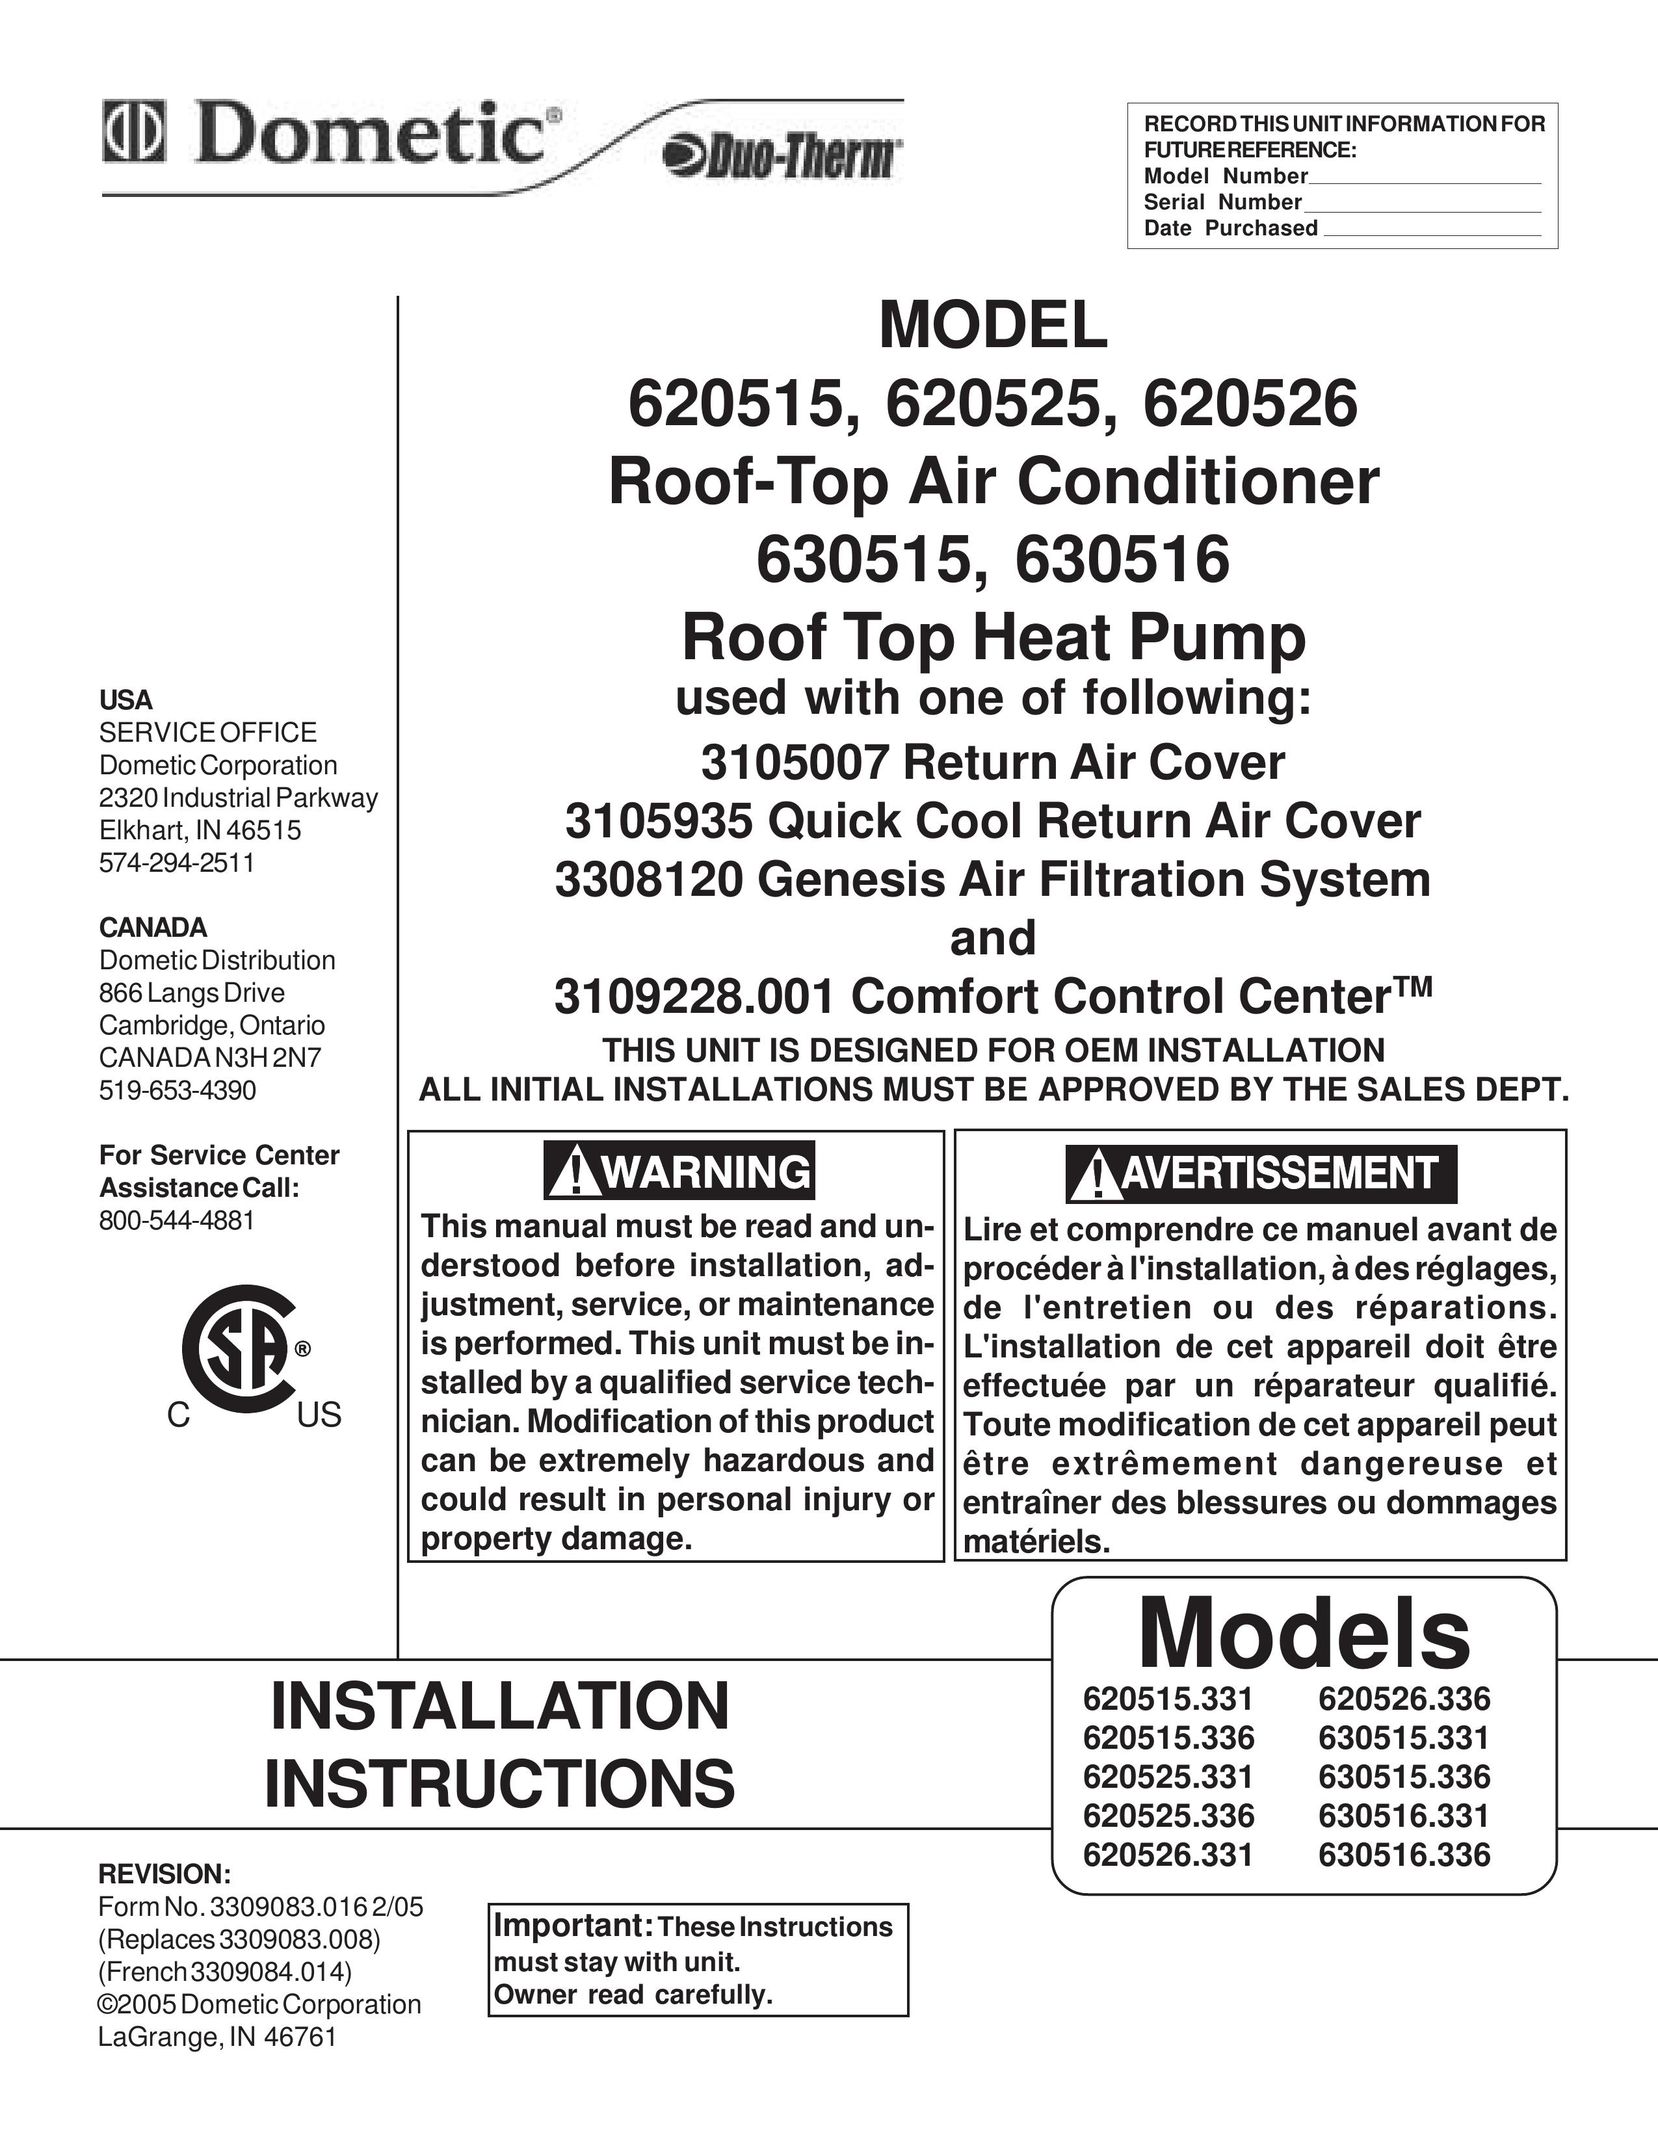 Dometic 620525 Heat Pump User Manual